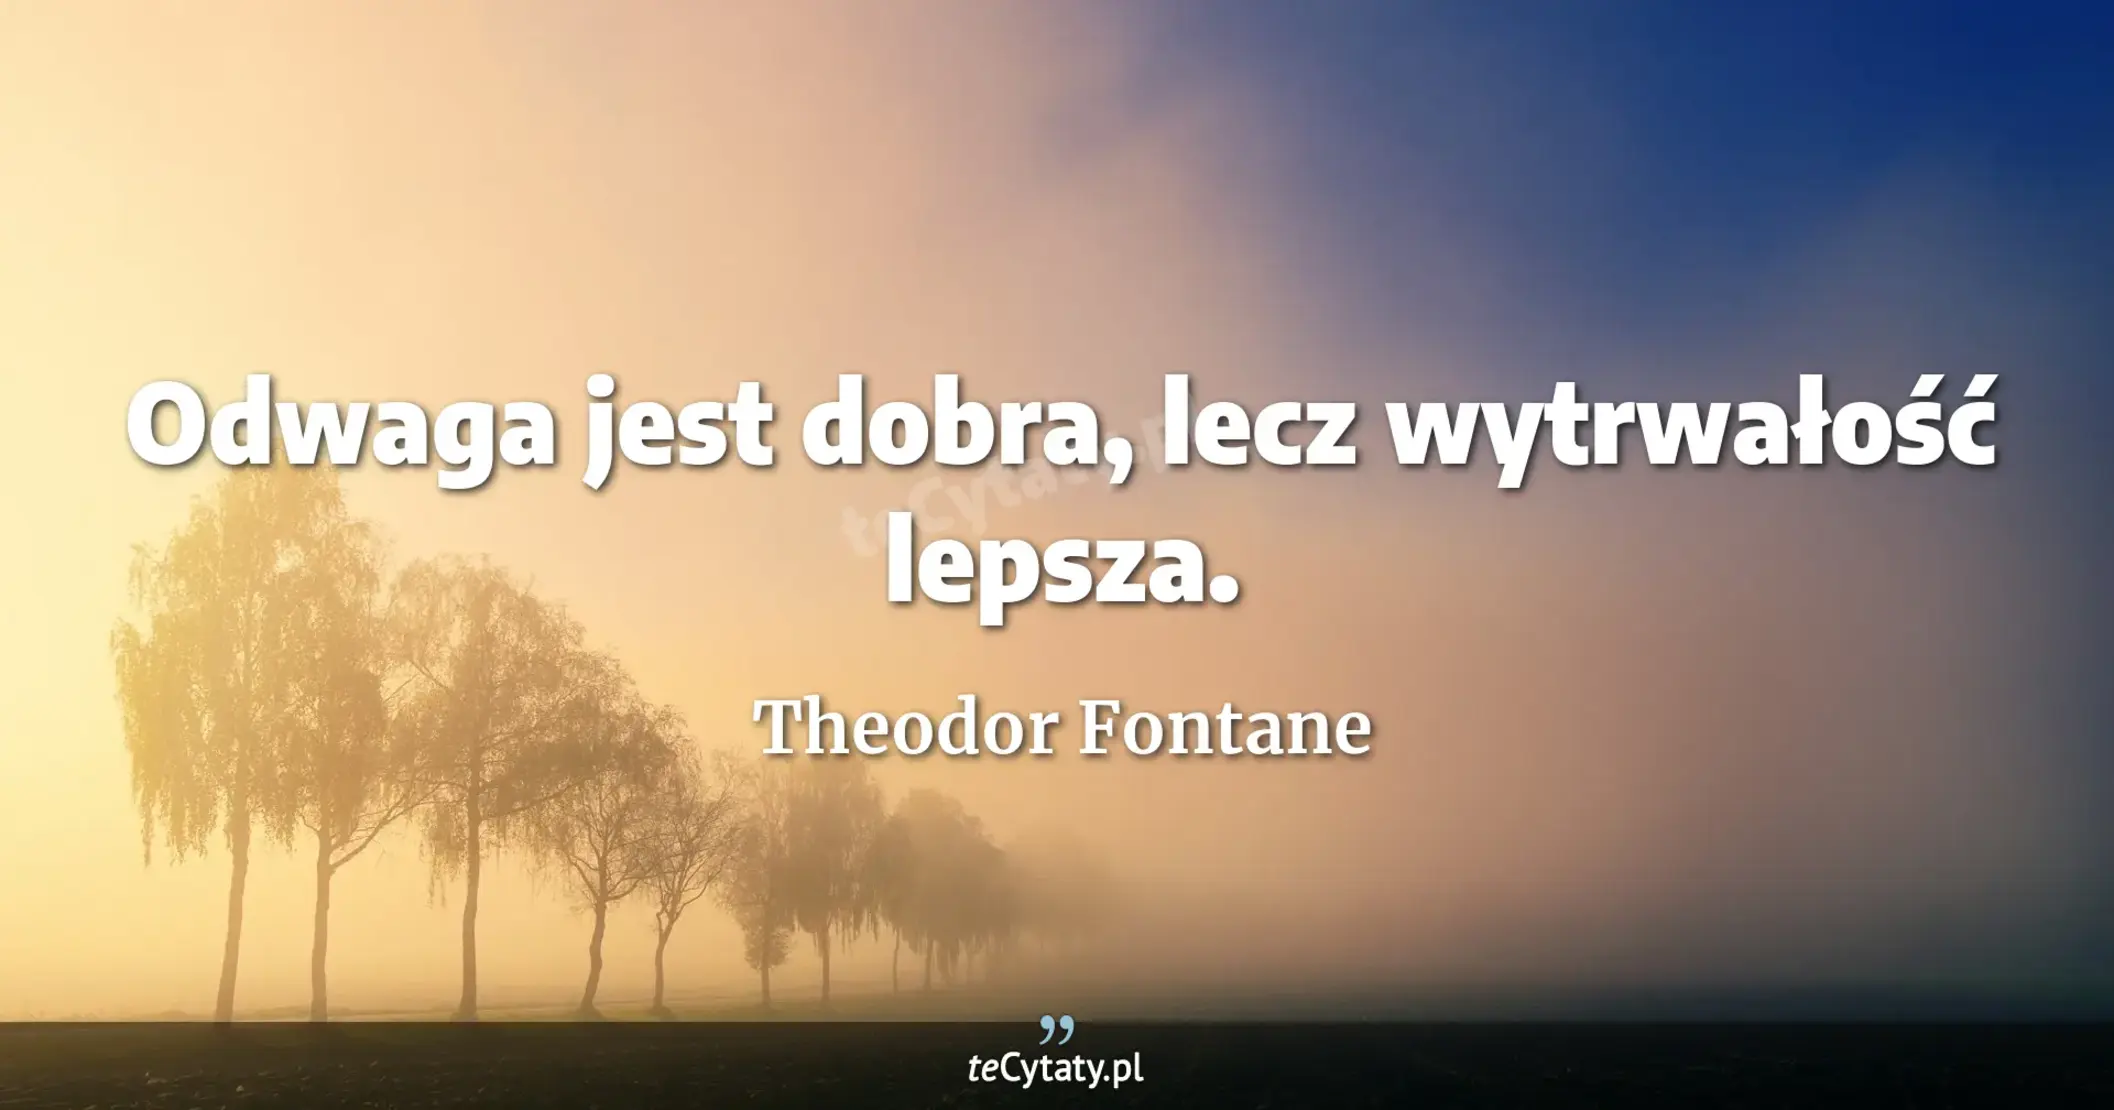 Odwaga jest dobra, lecz wytrwałość lepsza. - Theodor Fontane